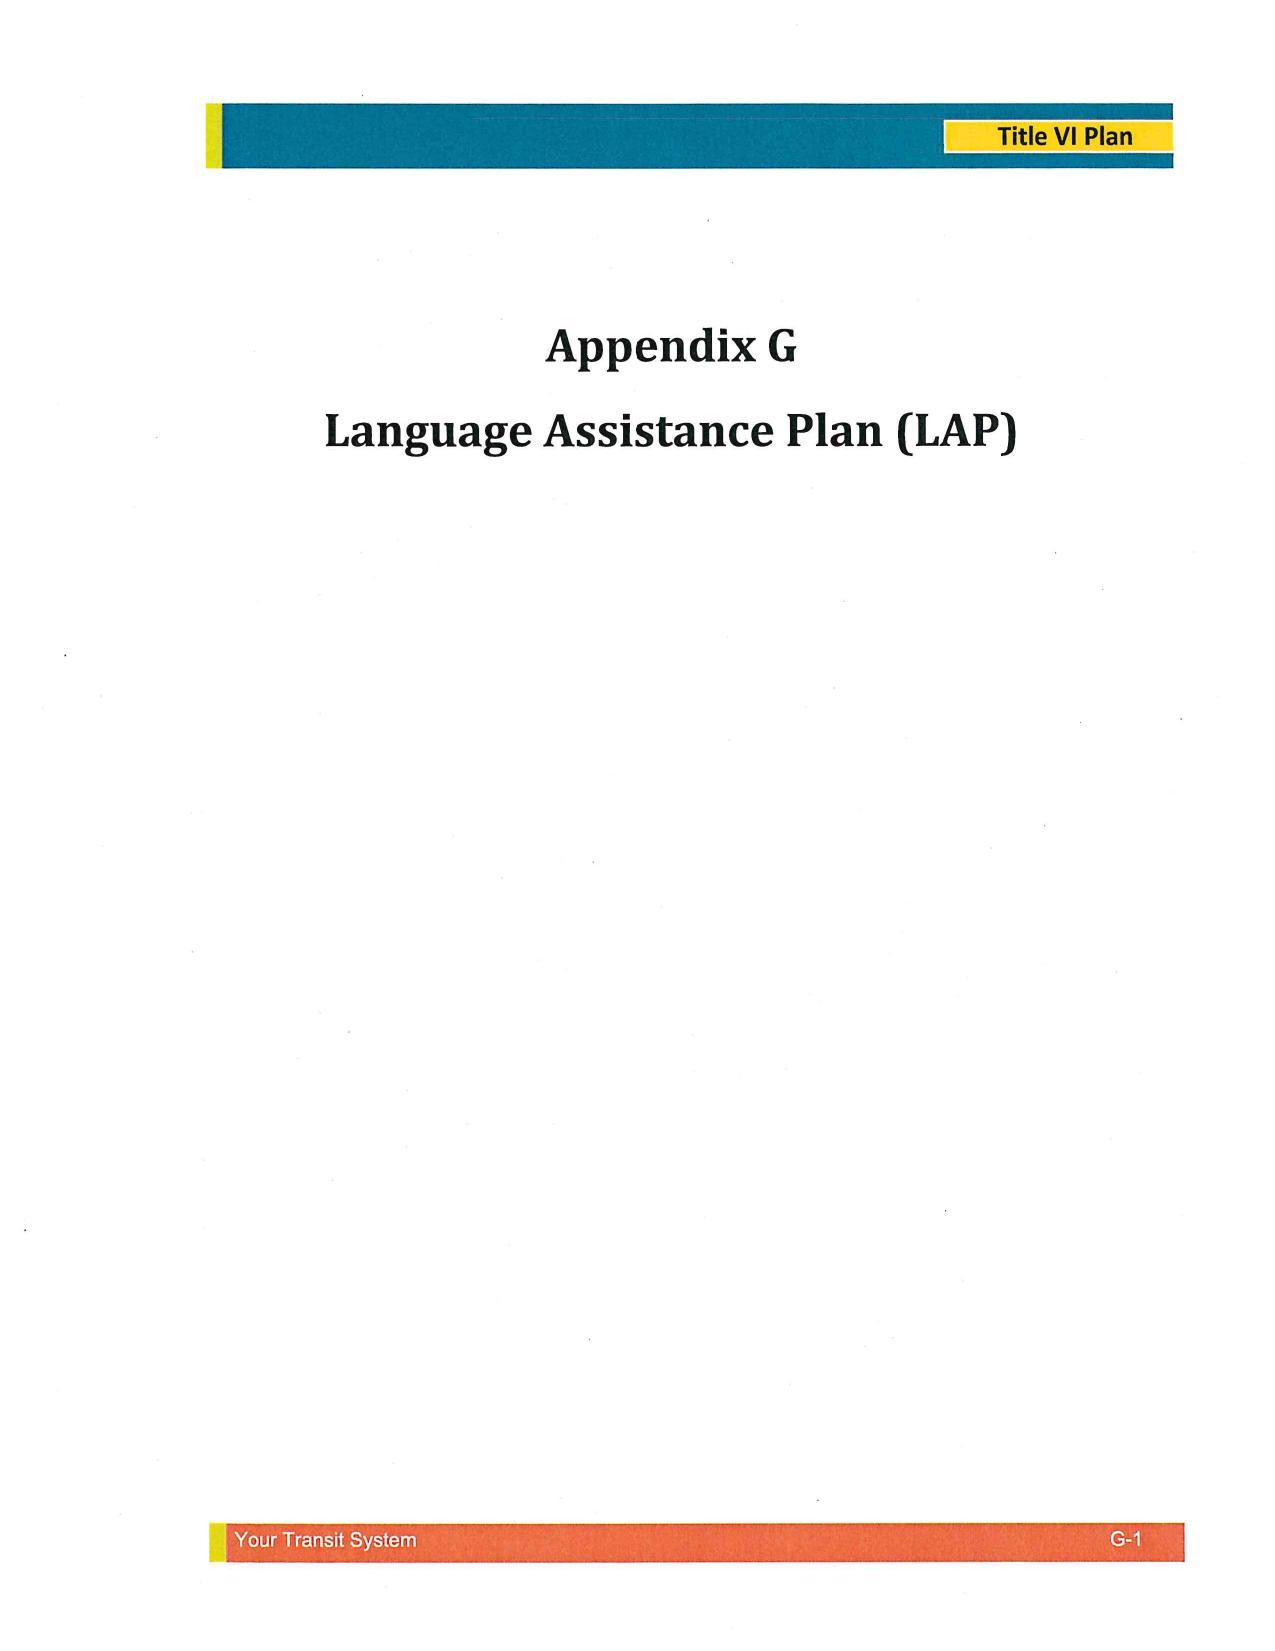 Appendix G: Language Assistance Plan